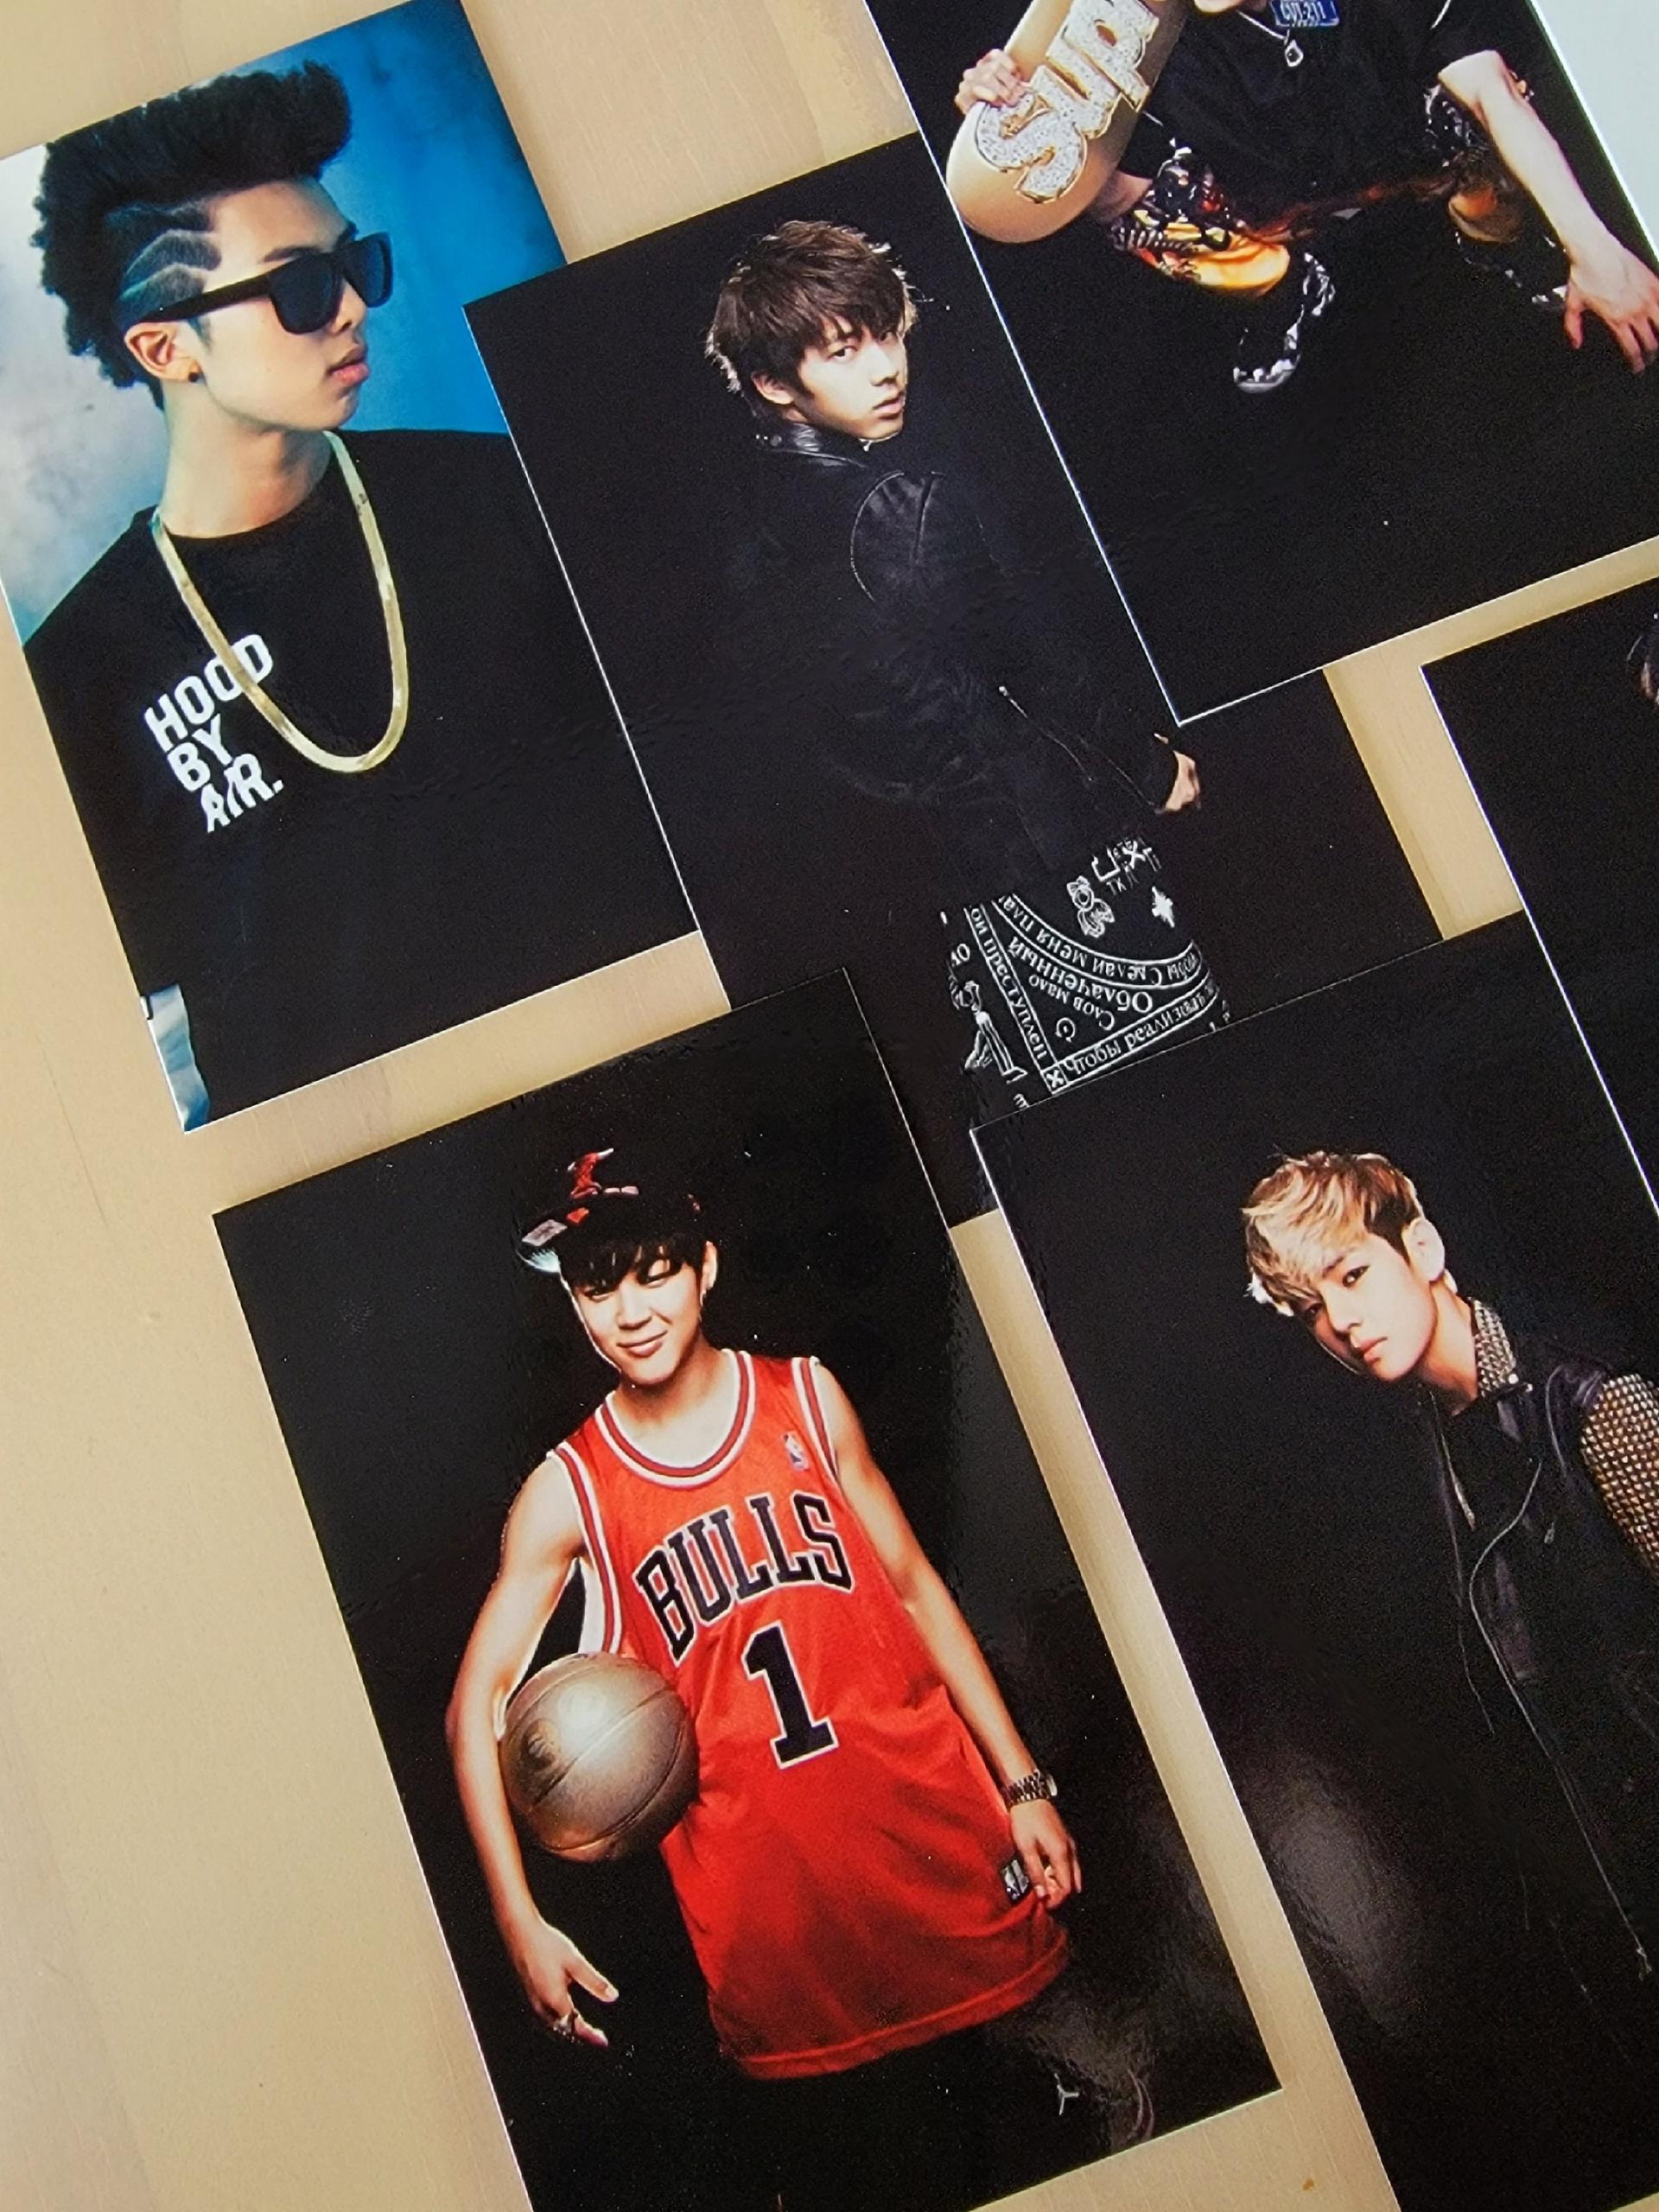 BTS 2 Kool 4 Skool Photocards